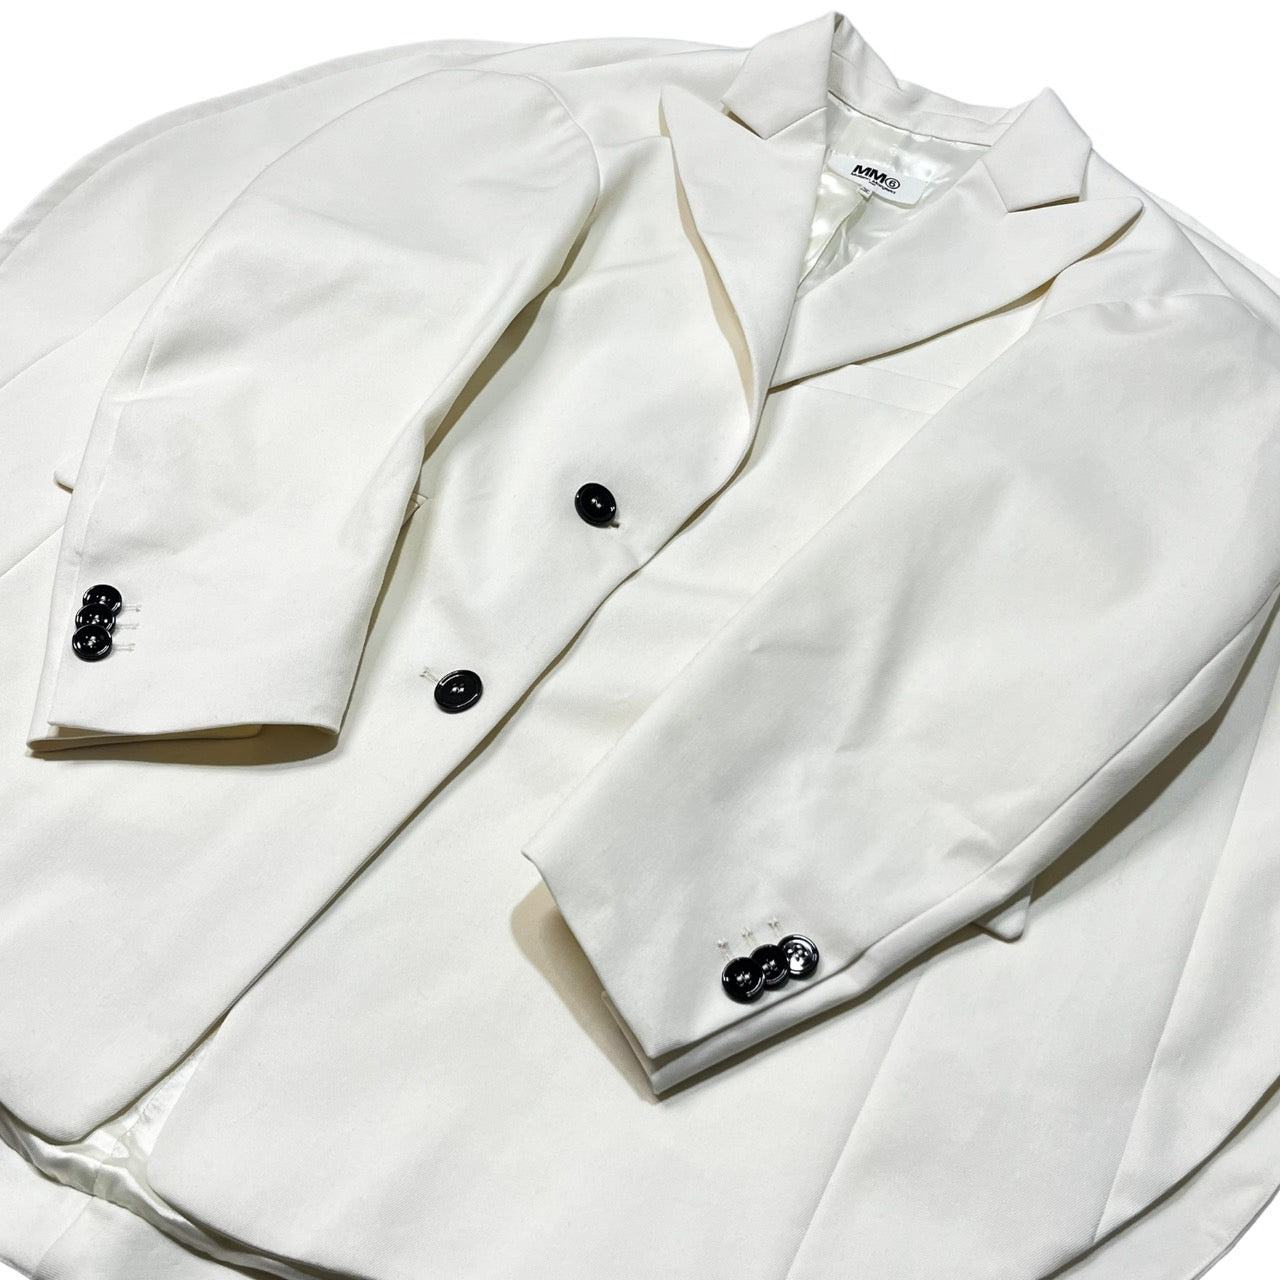 MM6 Maison Margiela(エムエムシックス) Oversized Circle Jacket サークル テーラード ジャケット 丸 円 S62BN0034 XS ホワイト/アイボリー